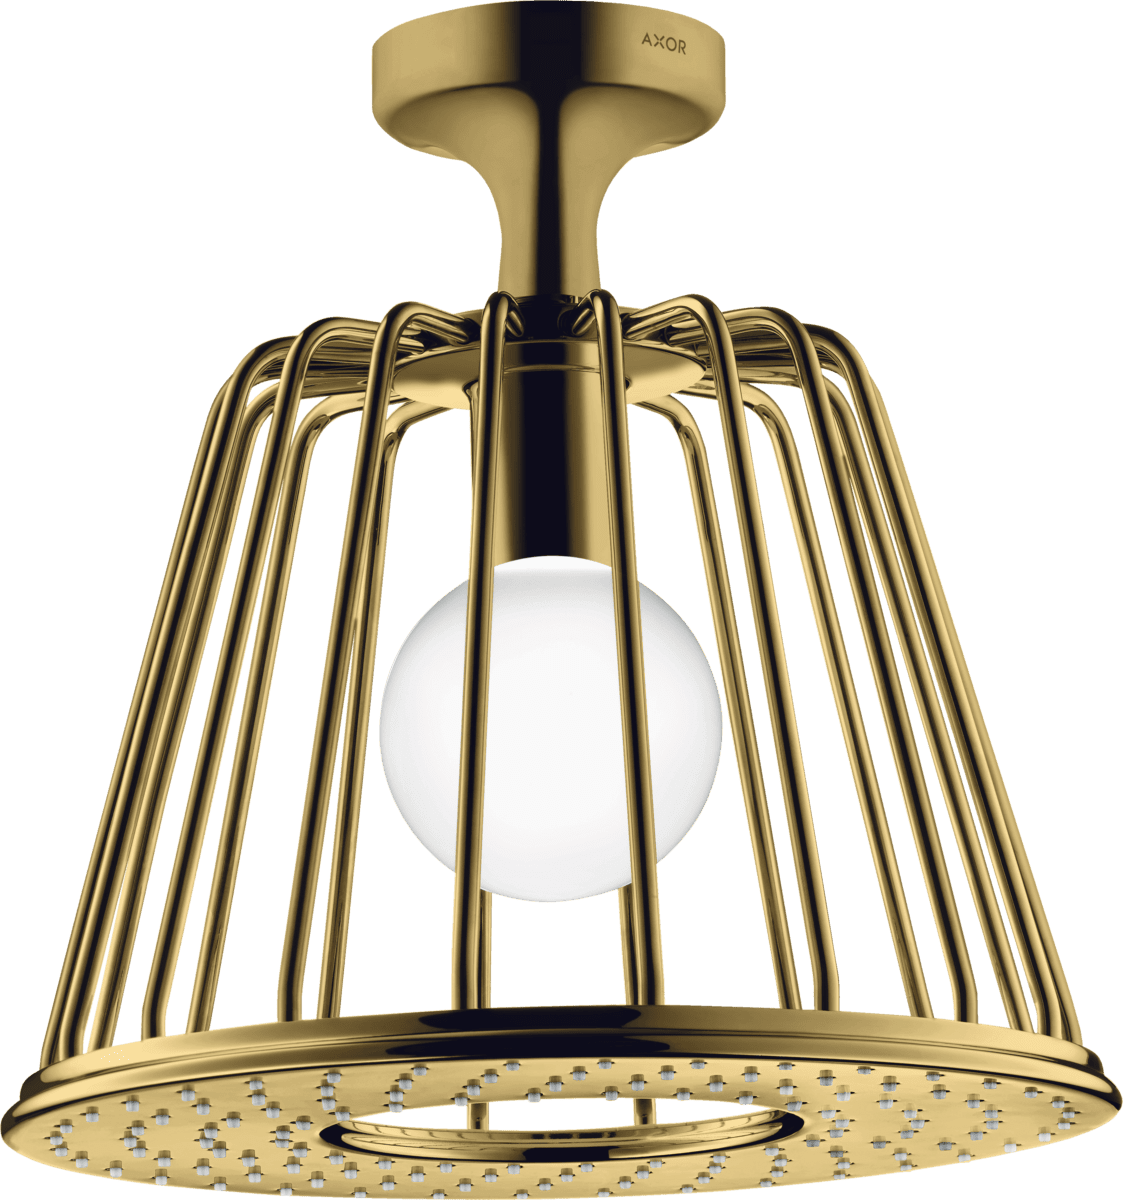 HANSGROHE AXOR LampShower/Nendo LampShower 275 1jet tavan bağlantılı #26032990 - Parlak Altın Optik resmi